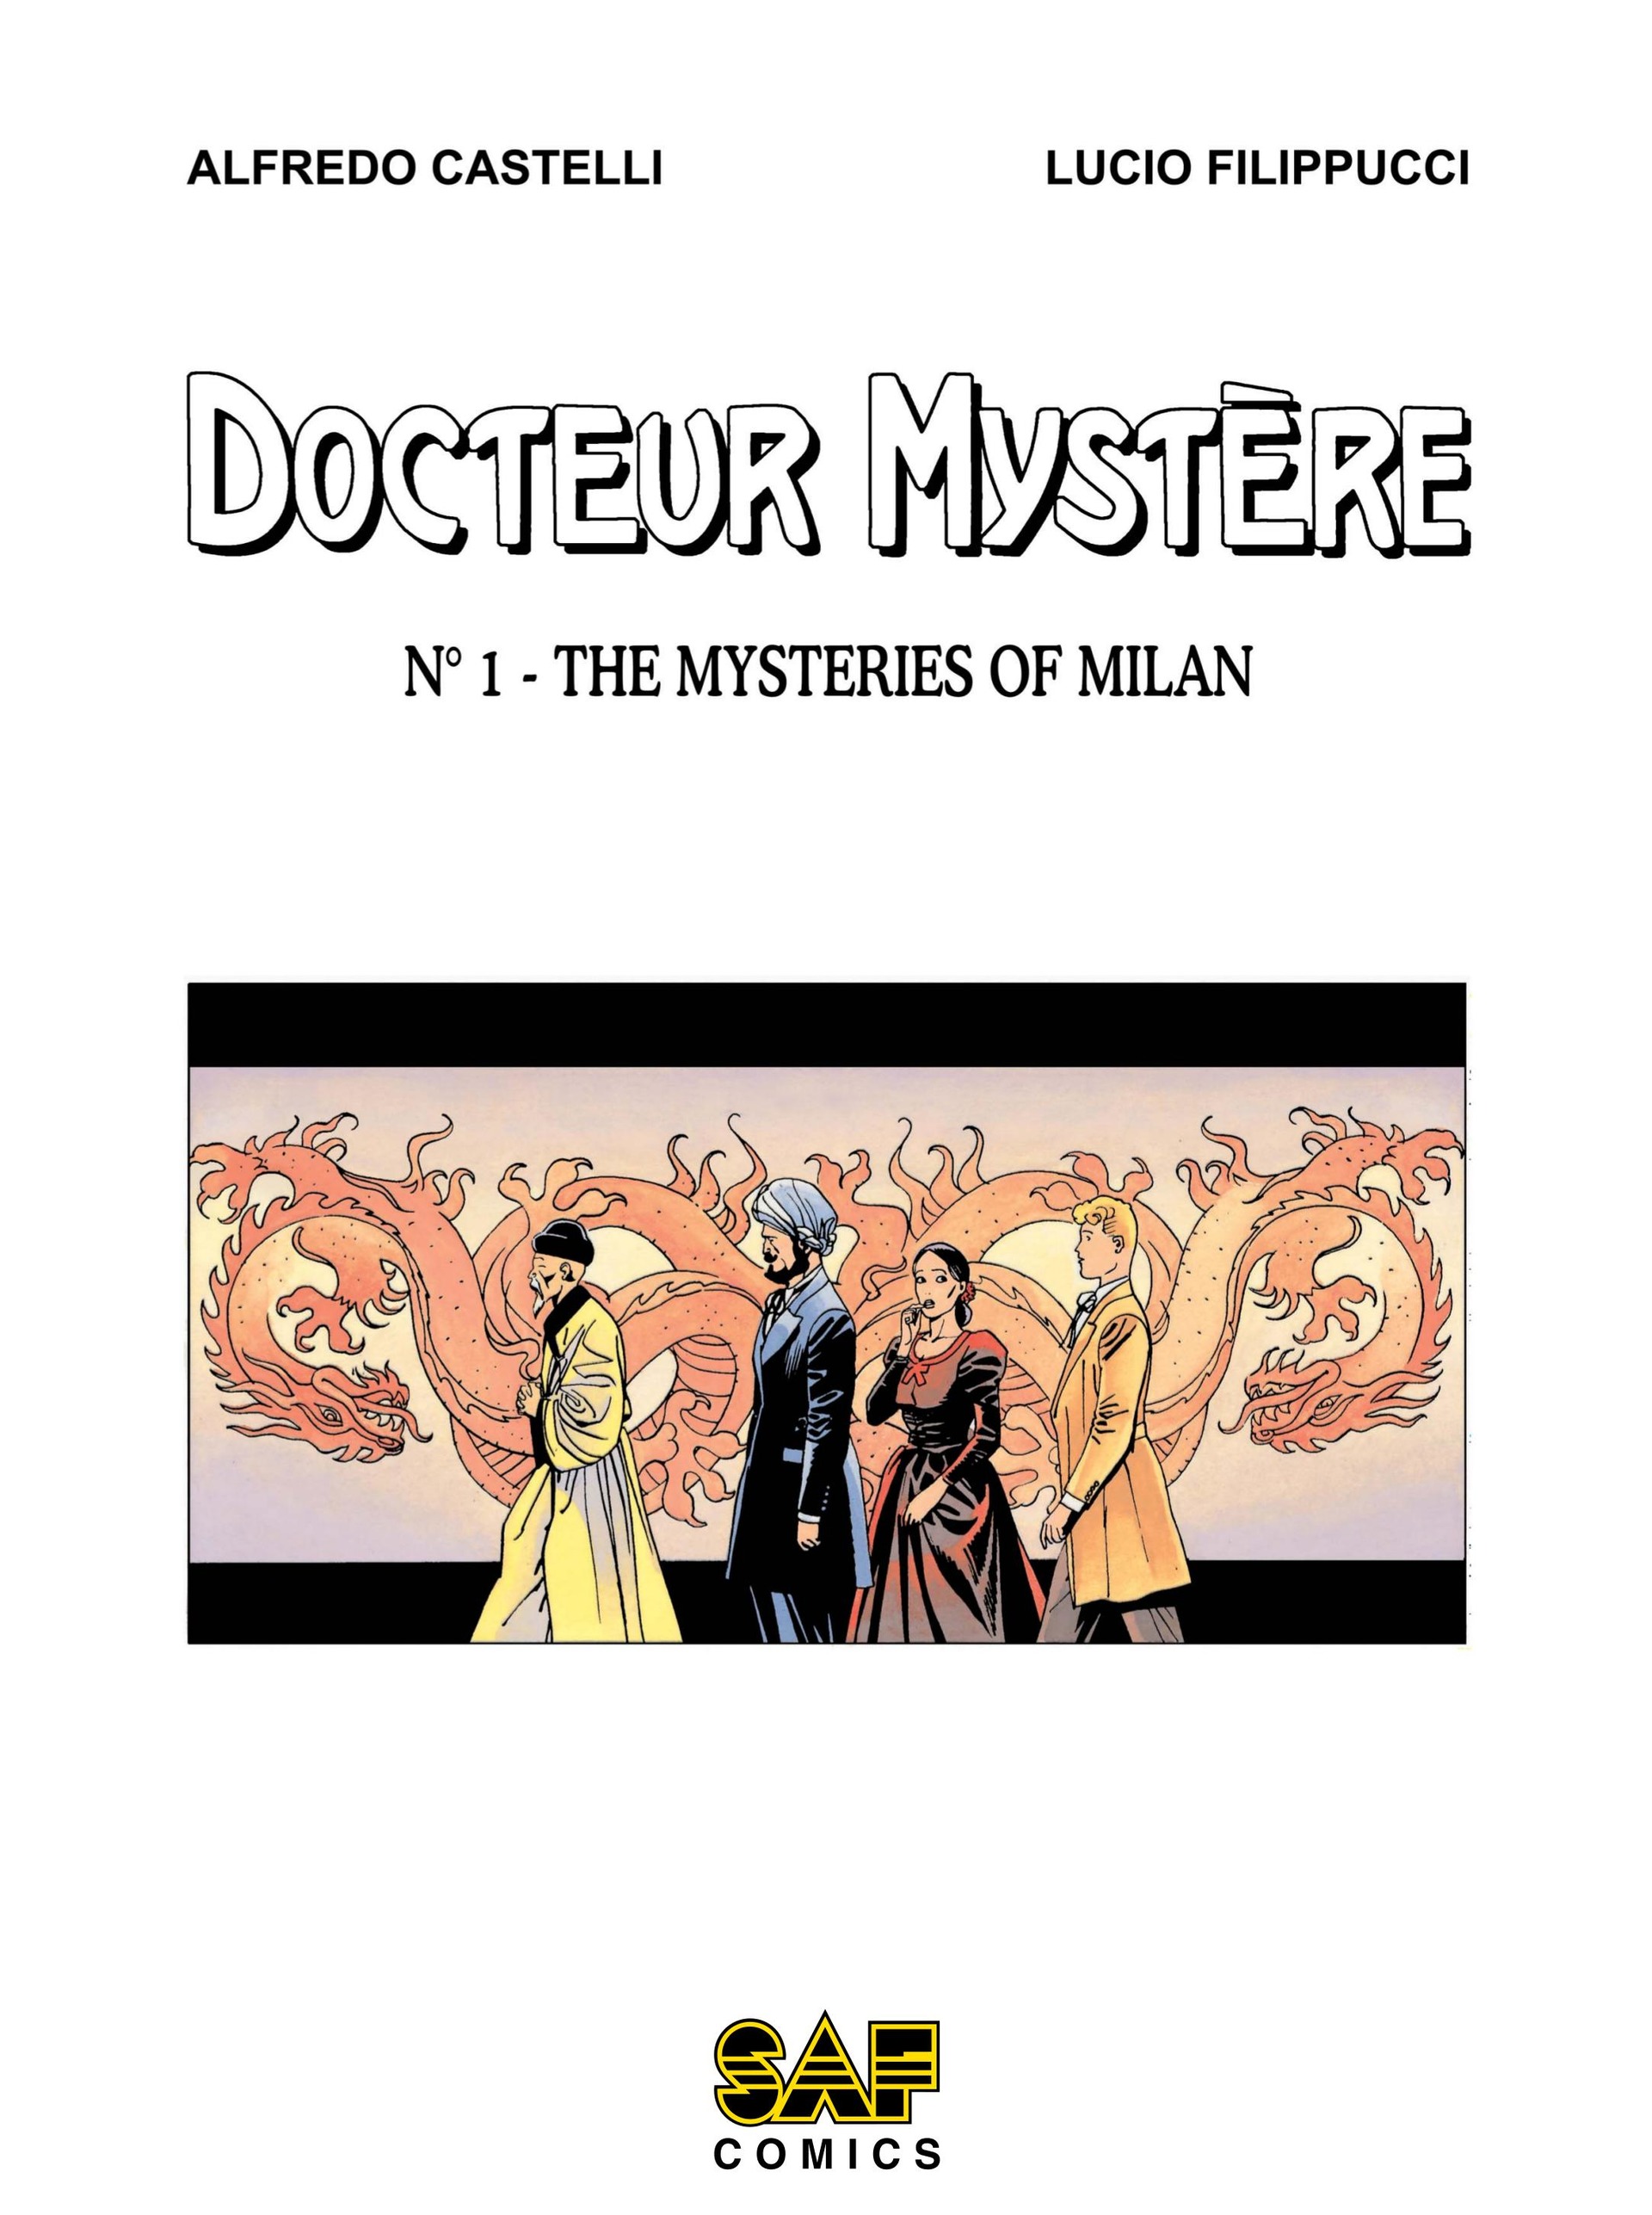 Read online Docteur Mystère comic -  Issue #1 - 2